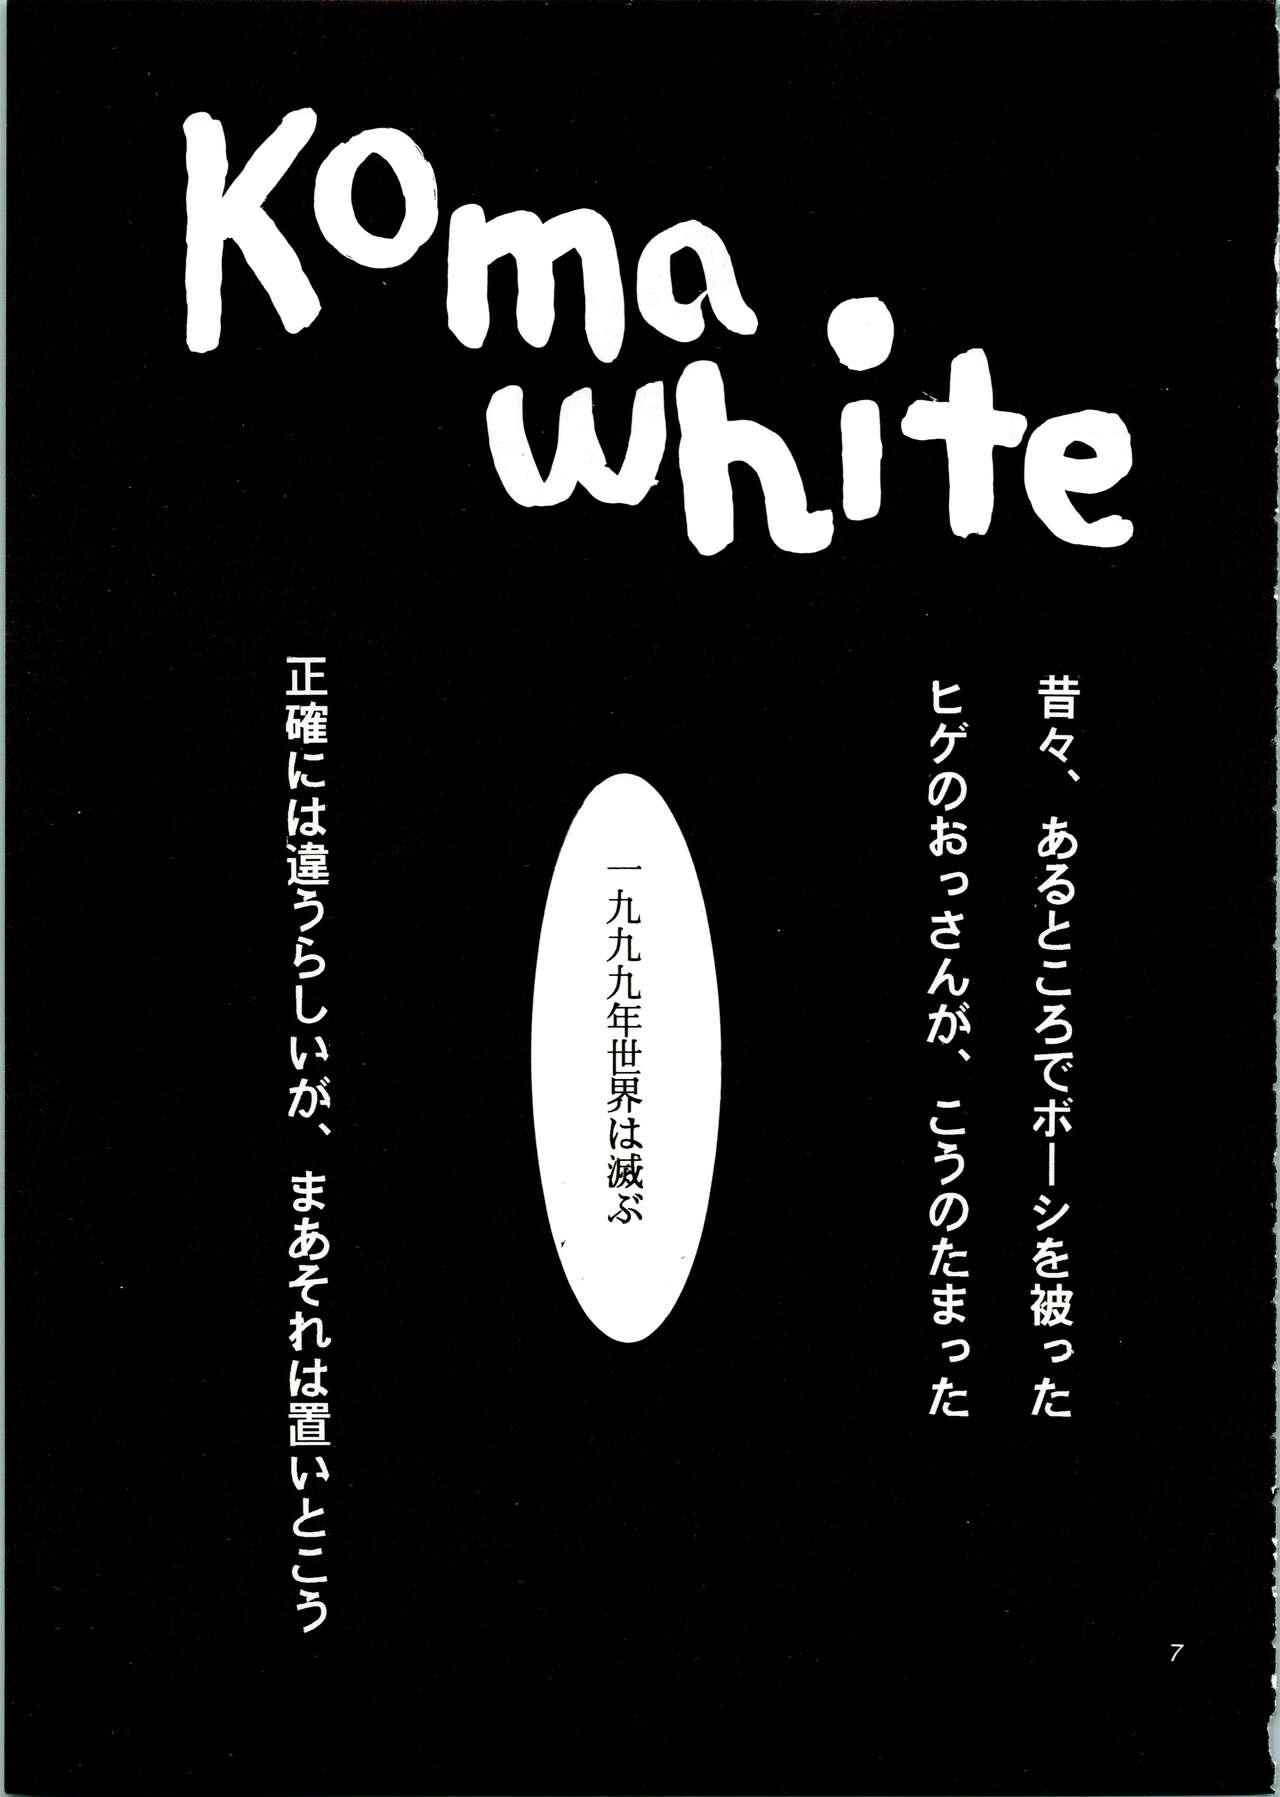 KOMA WHITE 6